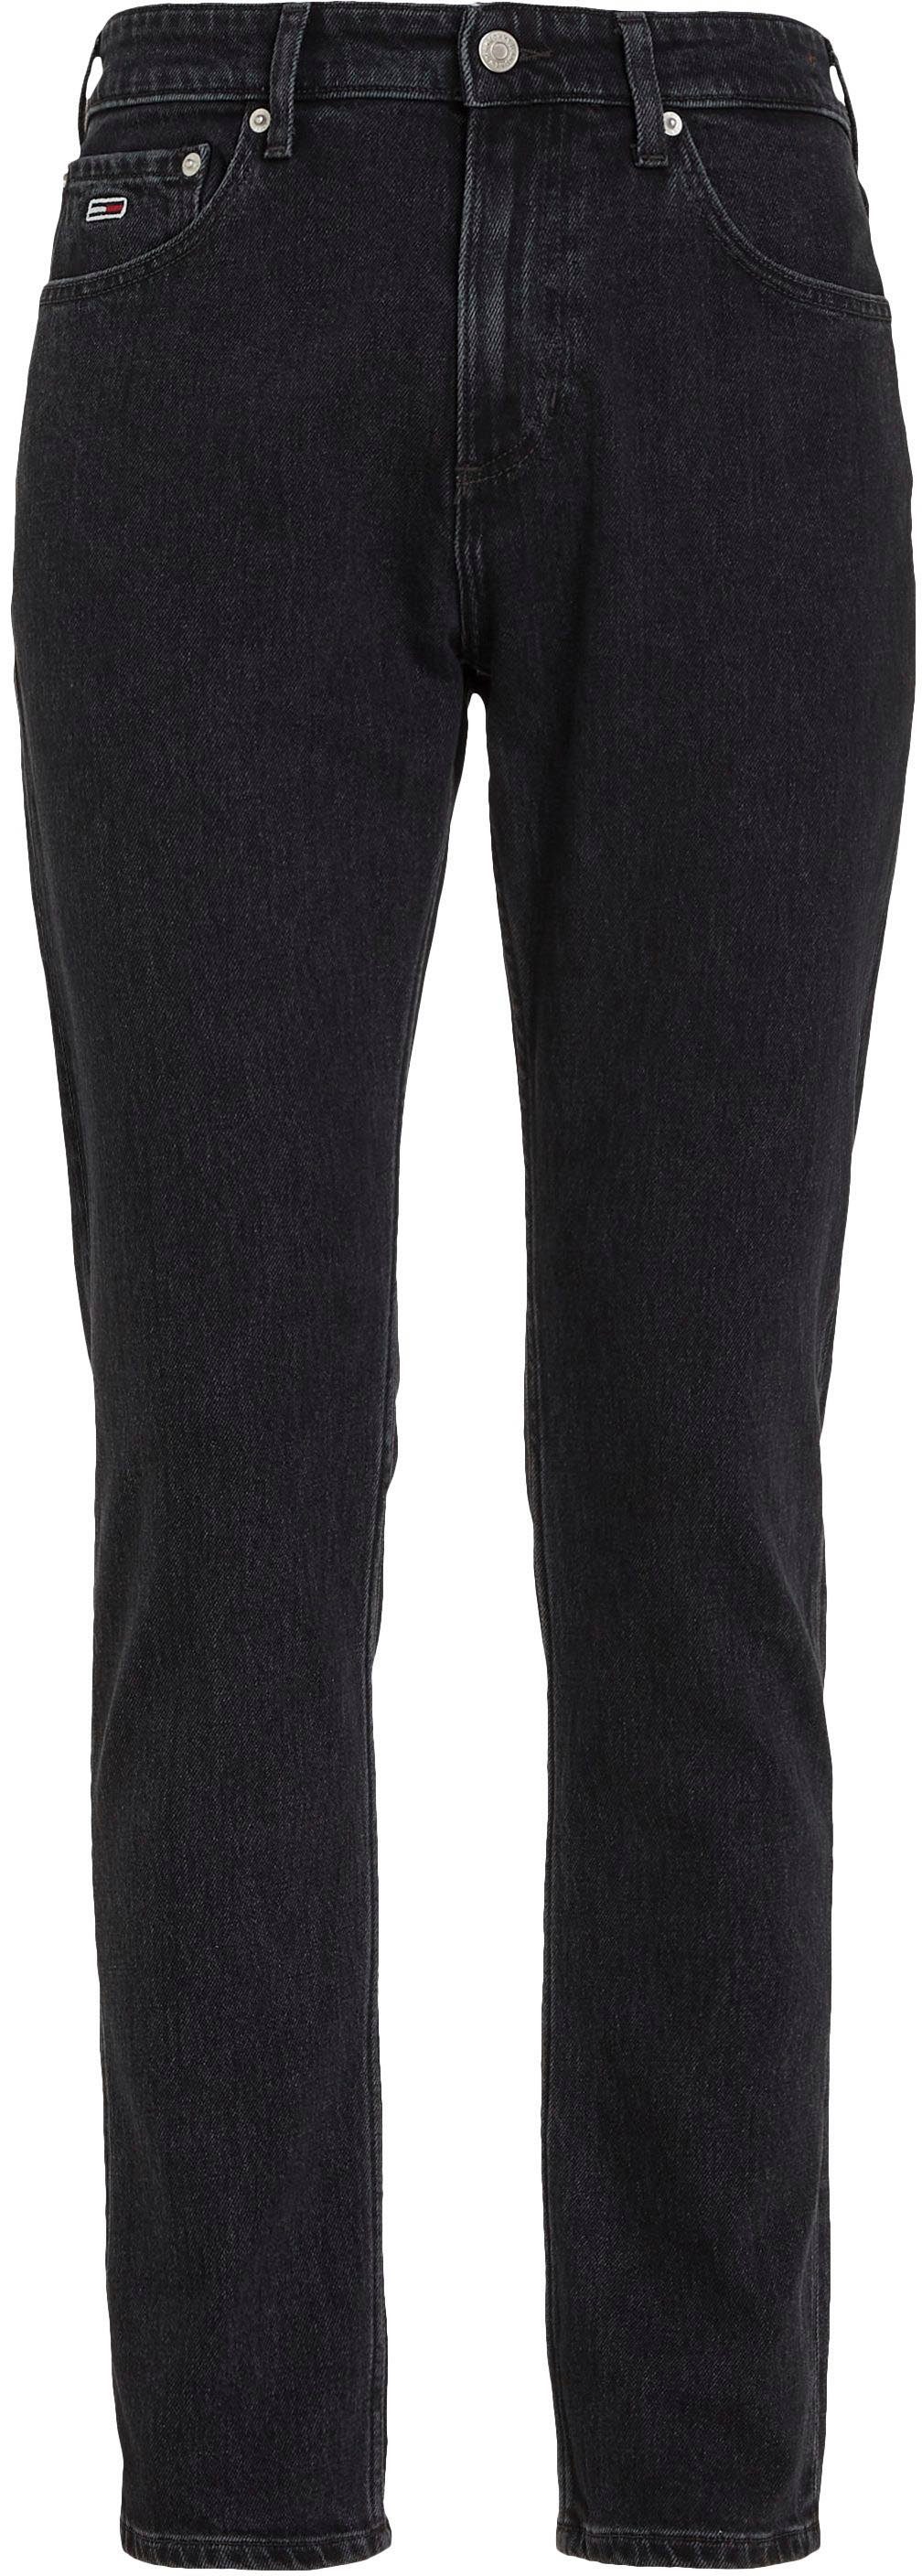 SLIM Denim Black 5-Pocket-Jeans SCANTON Tommy Jeans Y